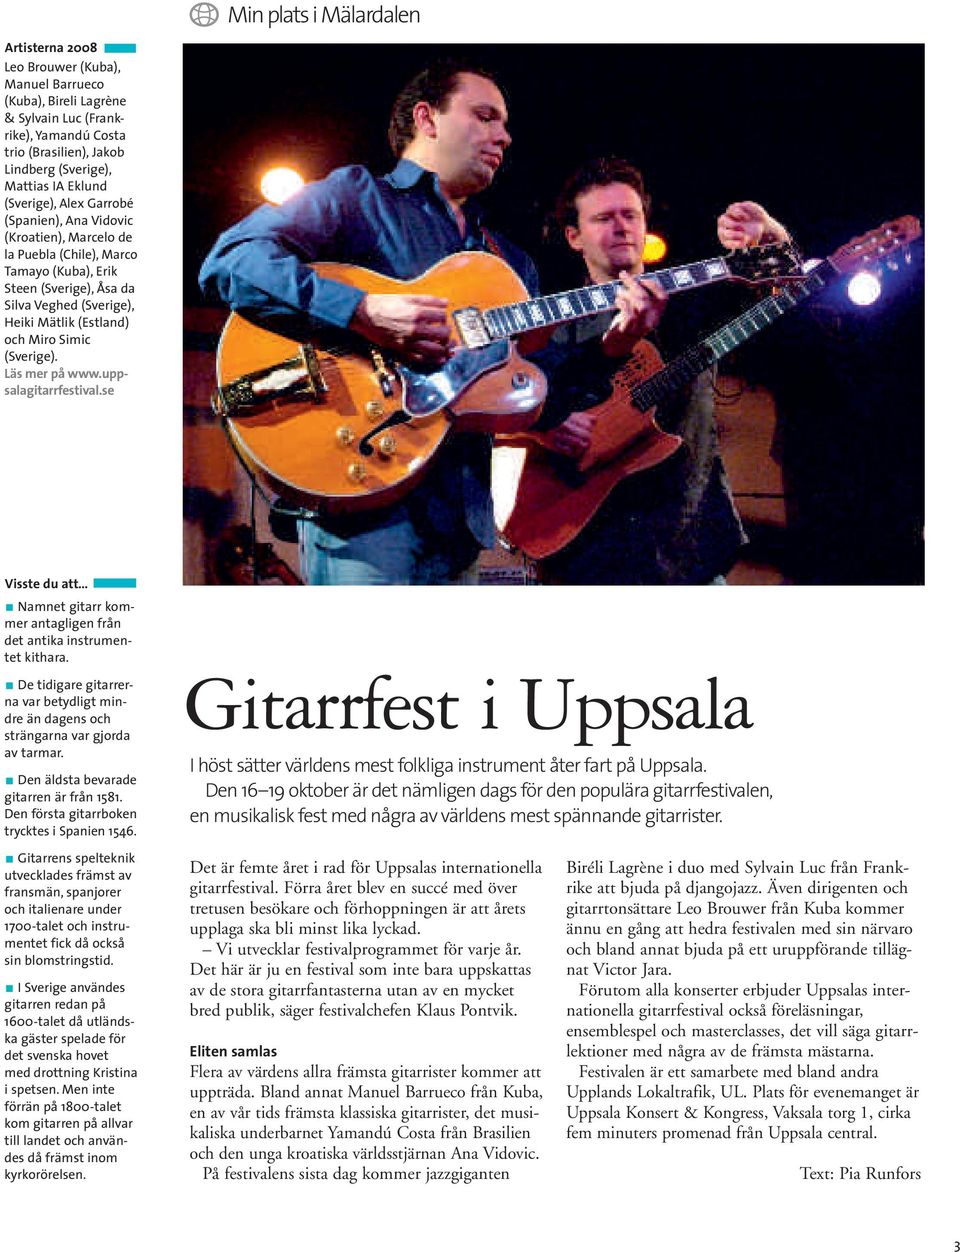 Miro Simic (Sverige). Läs mer på www.uppsalagitarrfestival.se Visste du att Namnet gitarr kommer antagligen från det antika instrumentet kithara.